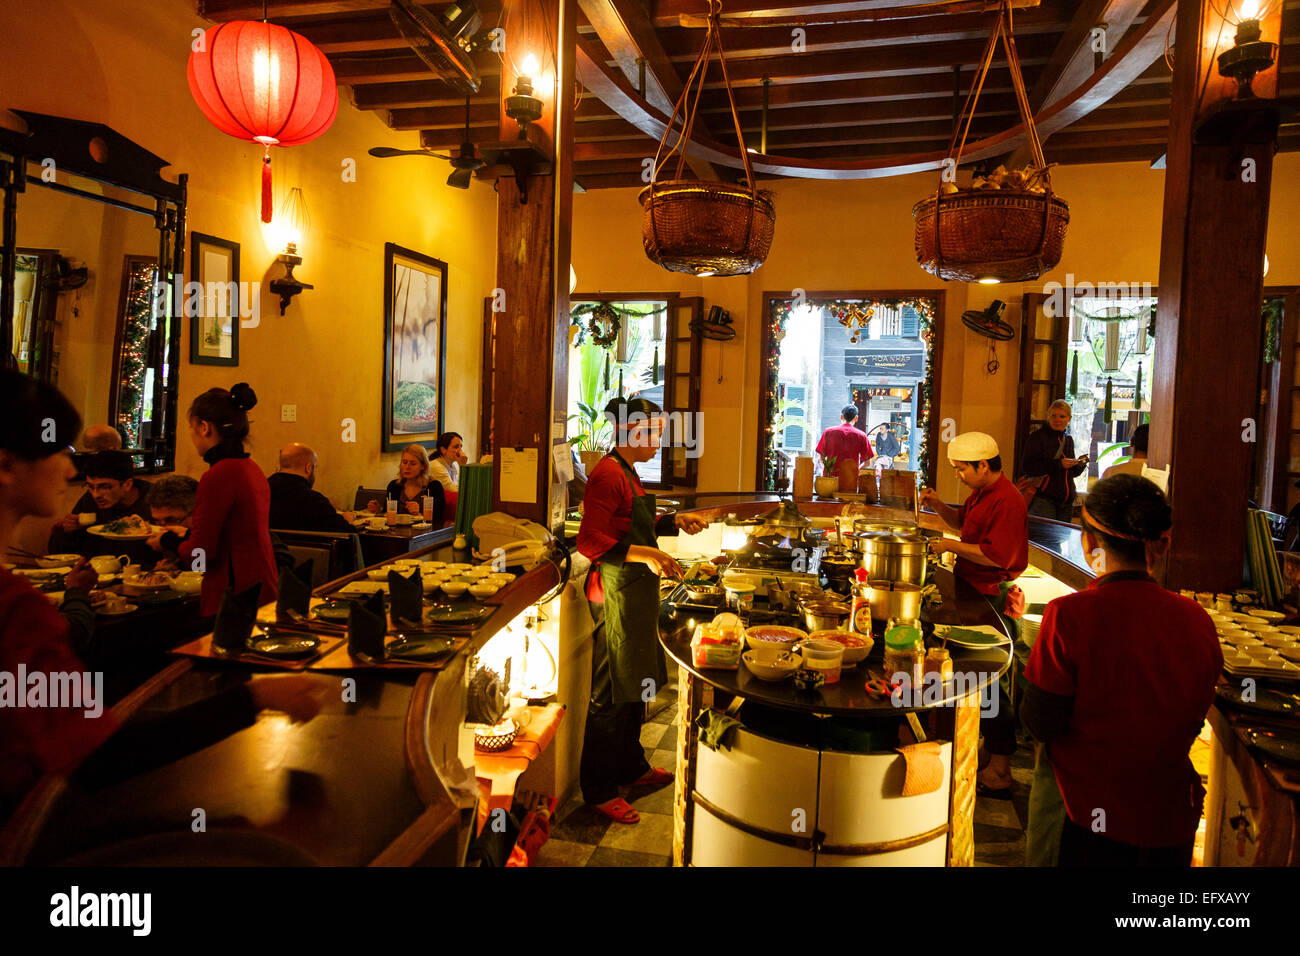 Morning Glory restaurante, Hoi An, Vietnam. Foto de stock